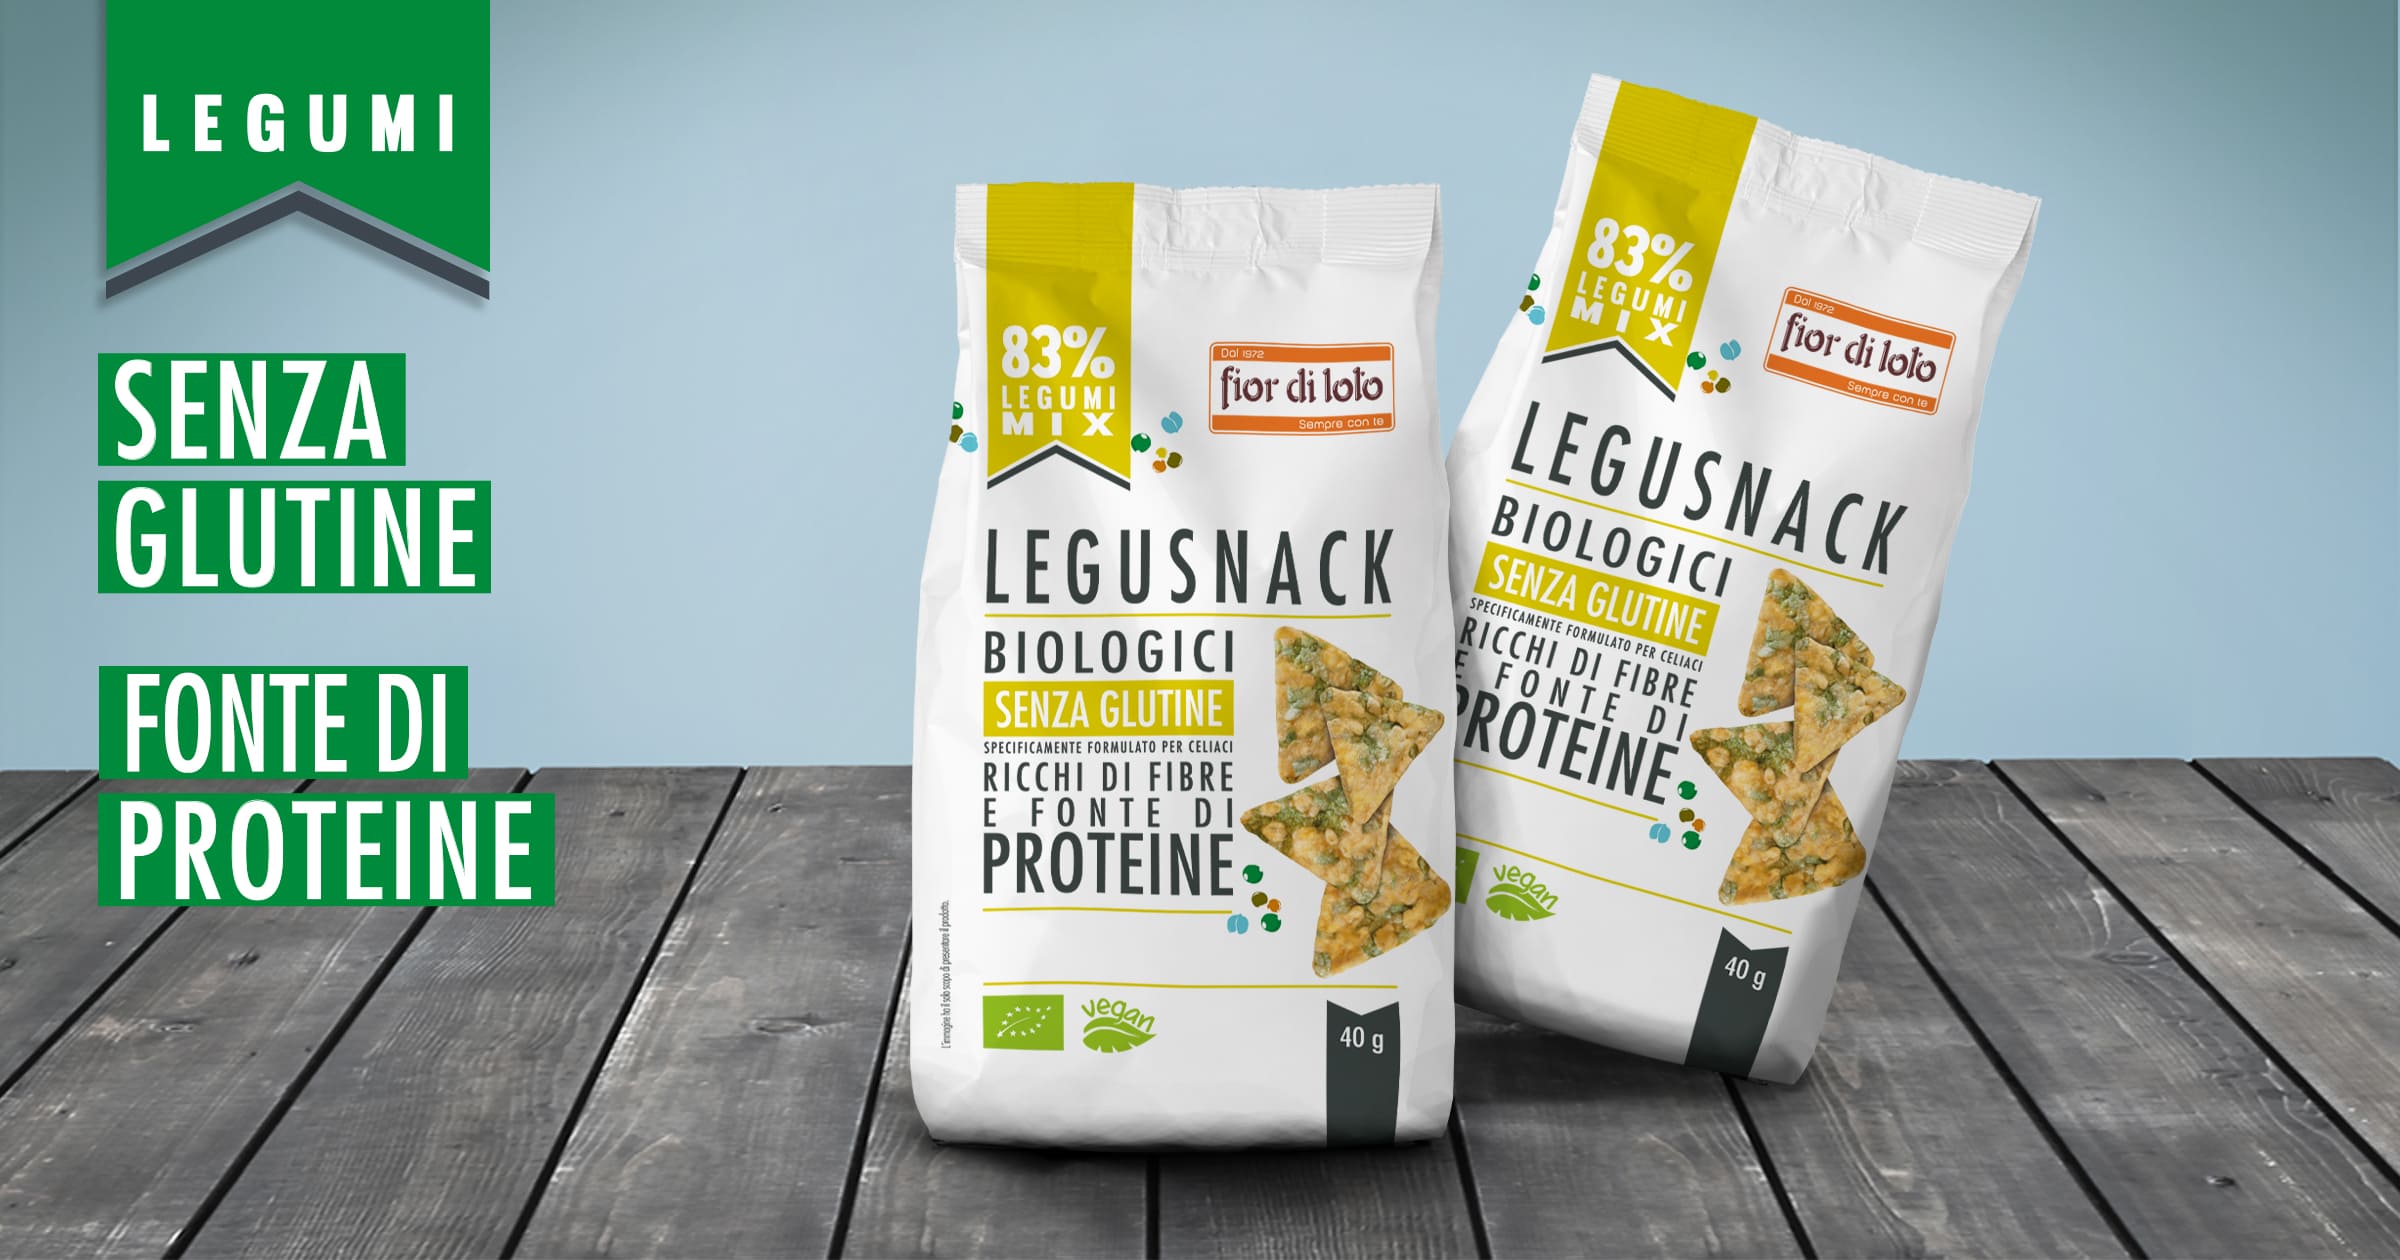 I Legusnack: uno nuovo snack bio e sfizioso fatto con i legumi